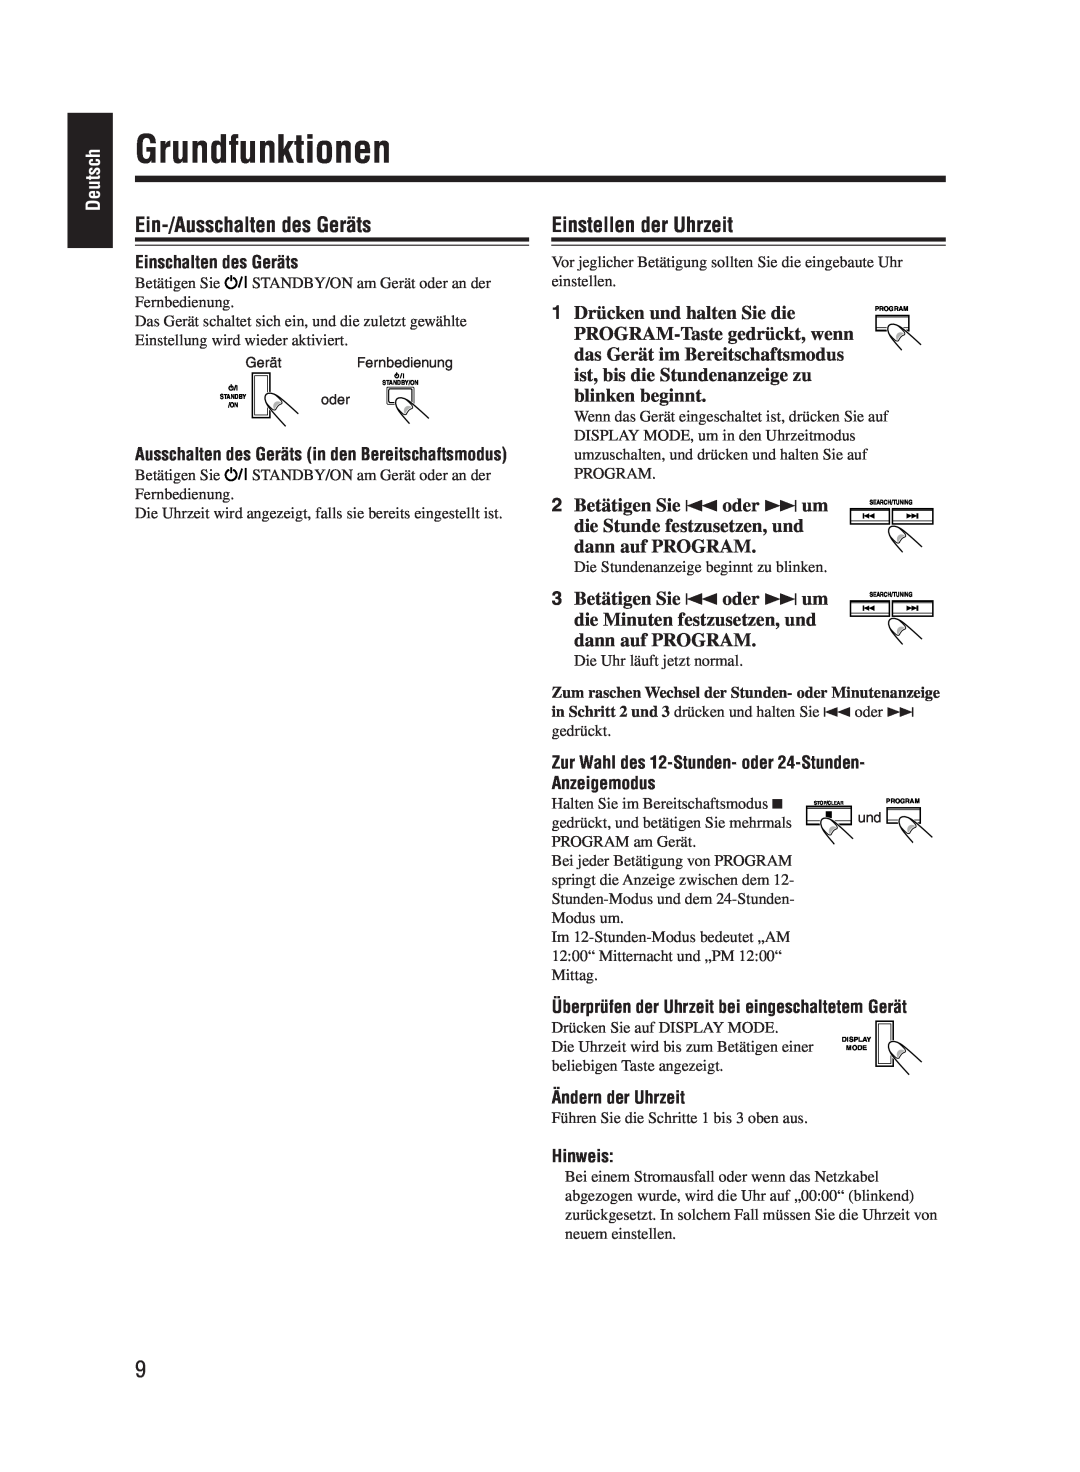 JVC UX-M55 manual Grundfunktionen, Ein-/Ausschaltendes Geräts, Einstellen der Uhrzeit, Deutsch 